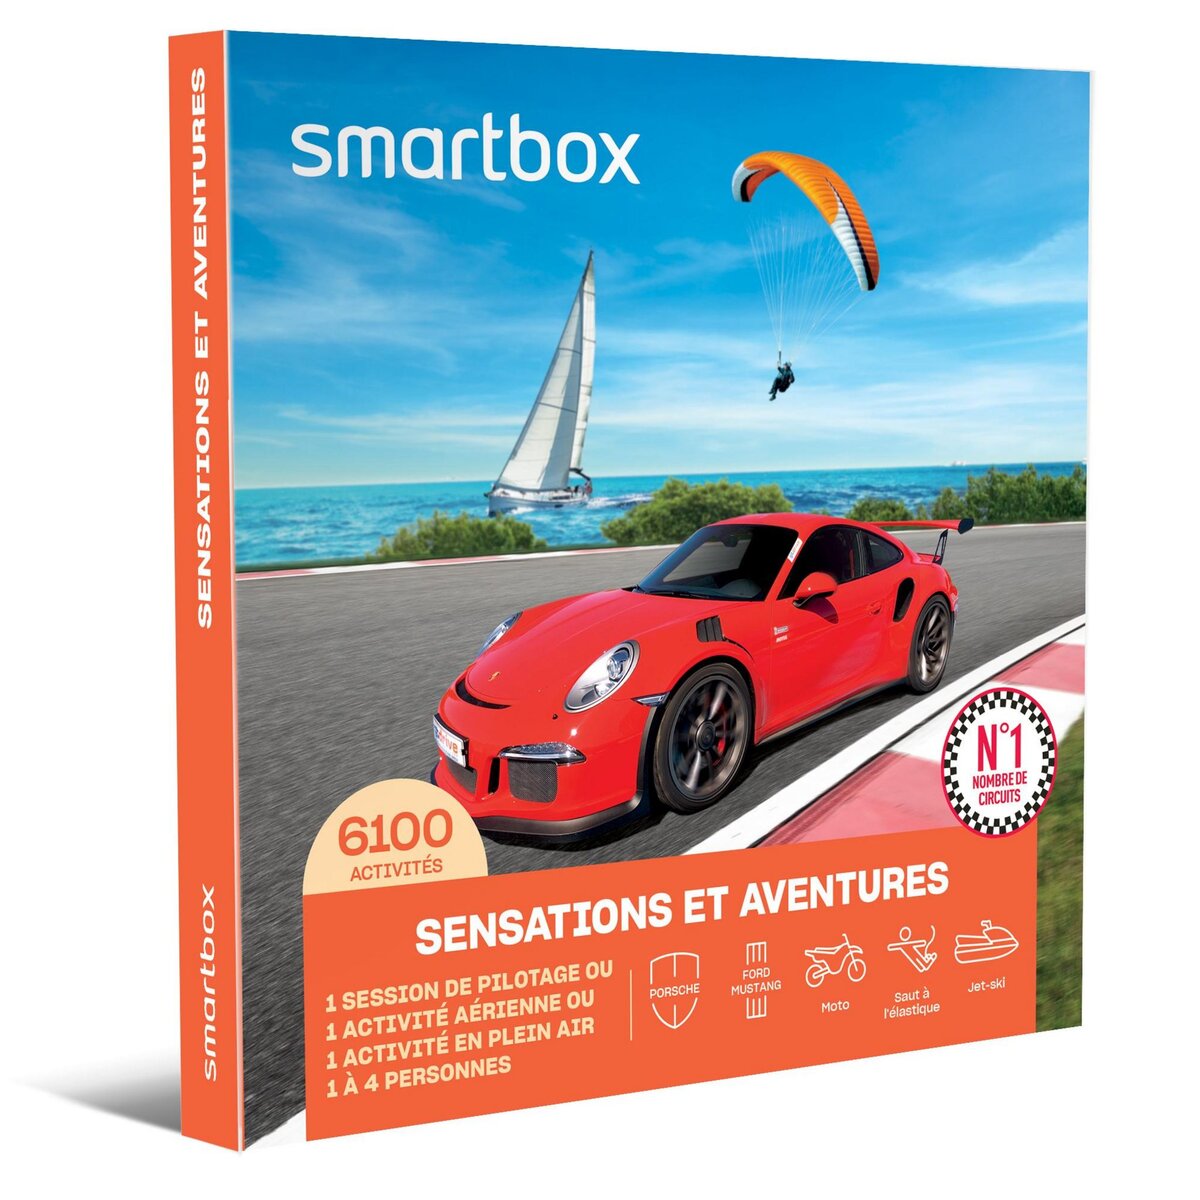 Smartbox Sensations et Aventures - Coffret Cadeau Sport & Aventure